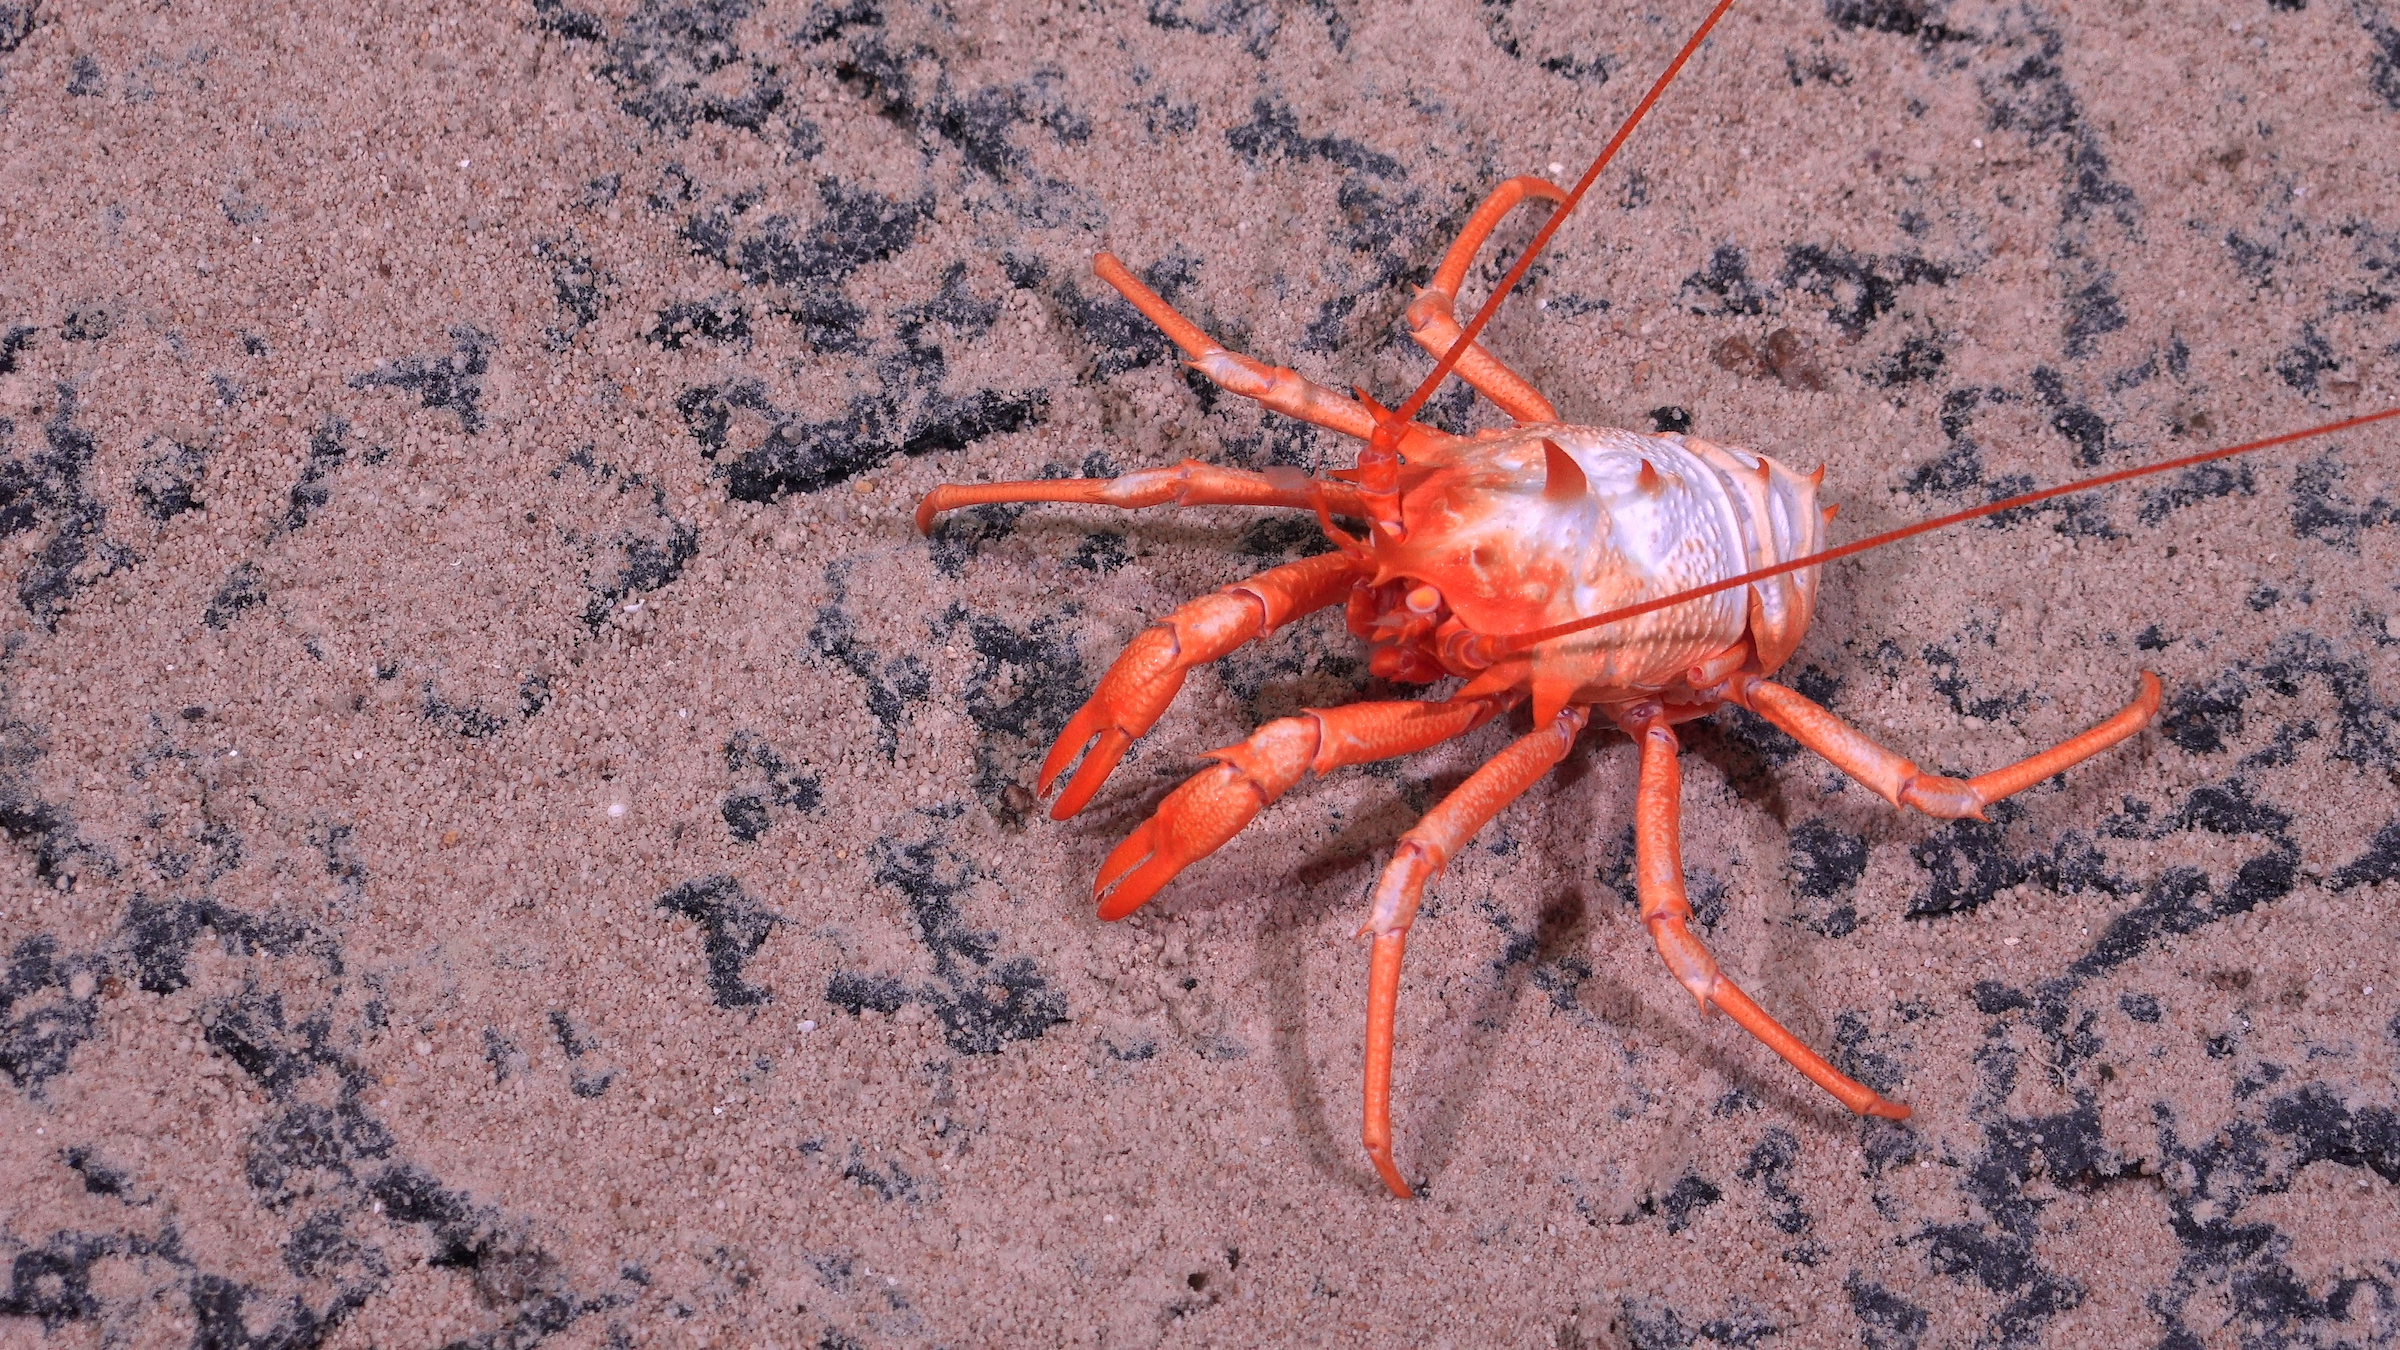 Descubren más de 100 nuevas especies en las profundidades marinas de Chile